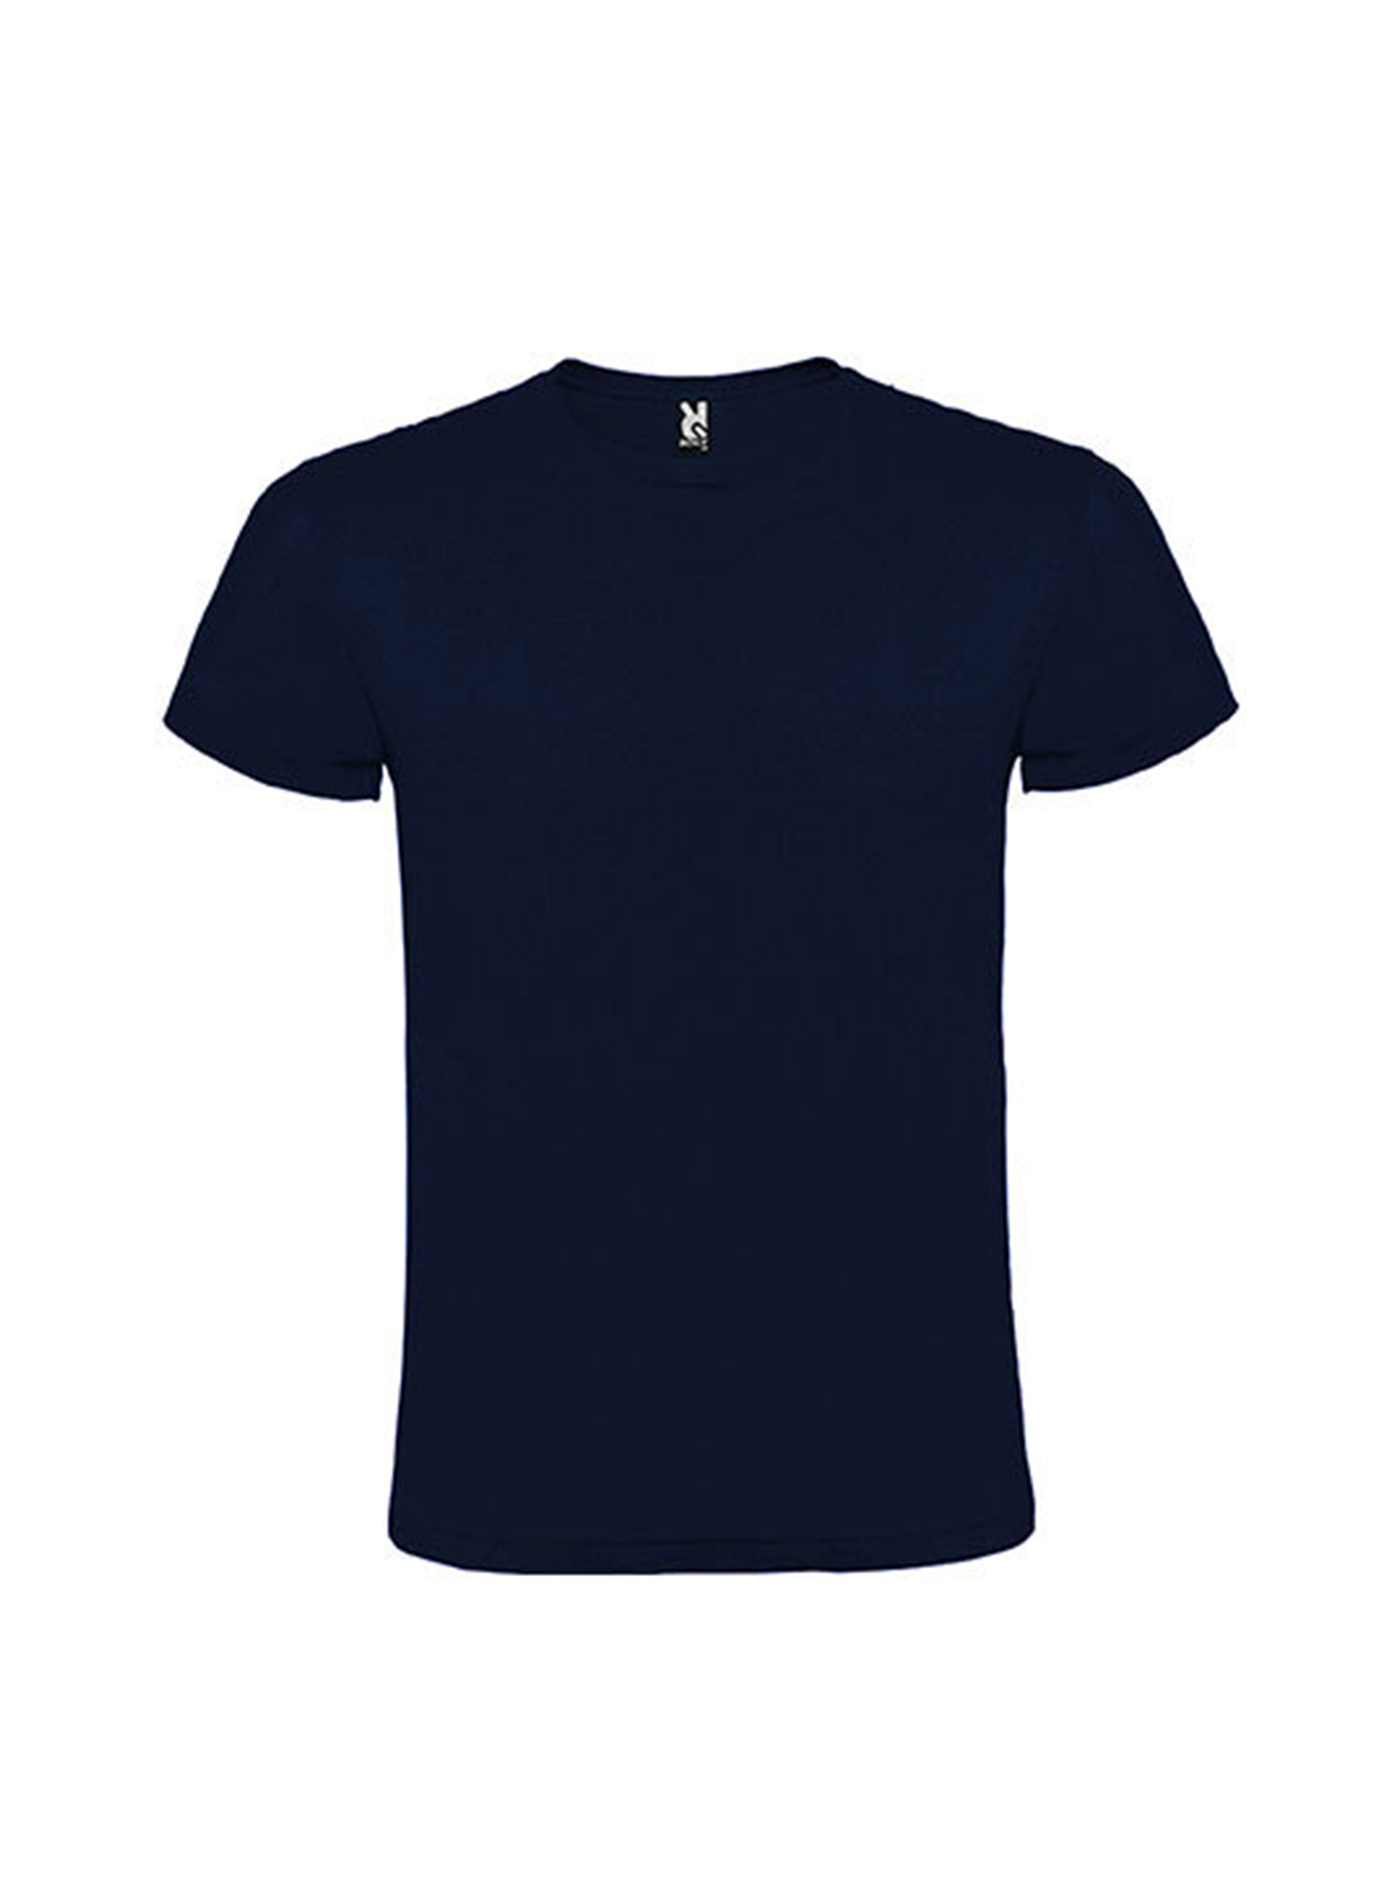 Pánské tričko Roly Atomic - Námořnická modrá L